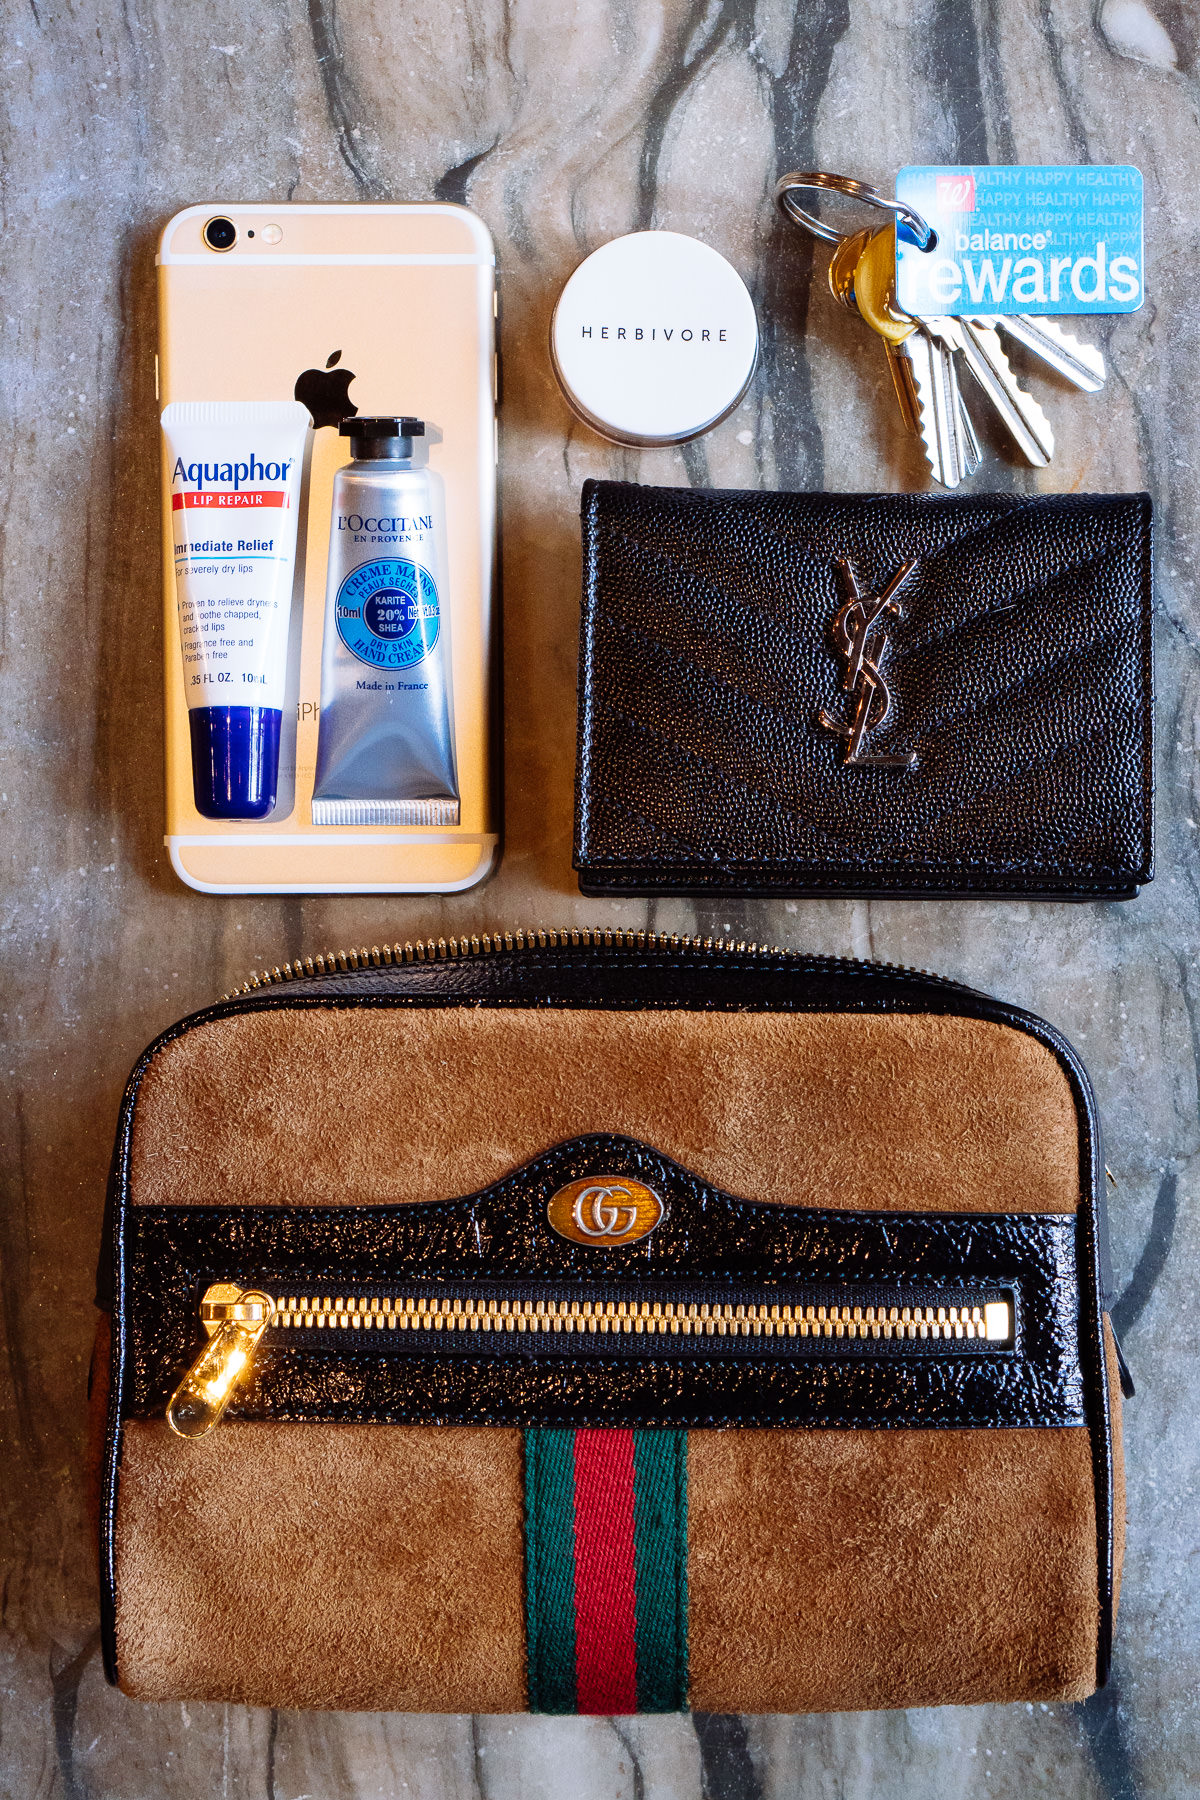 Meet the Gucci Ophidia Belt Bag - PurseBlog